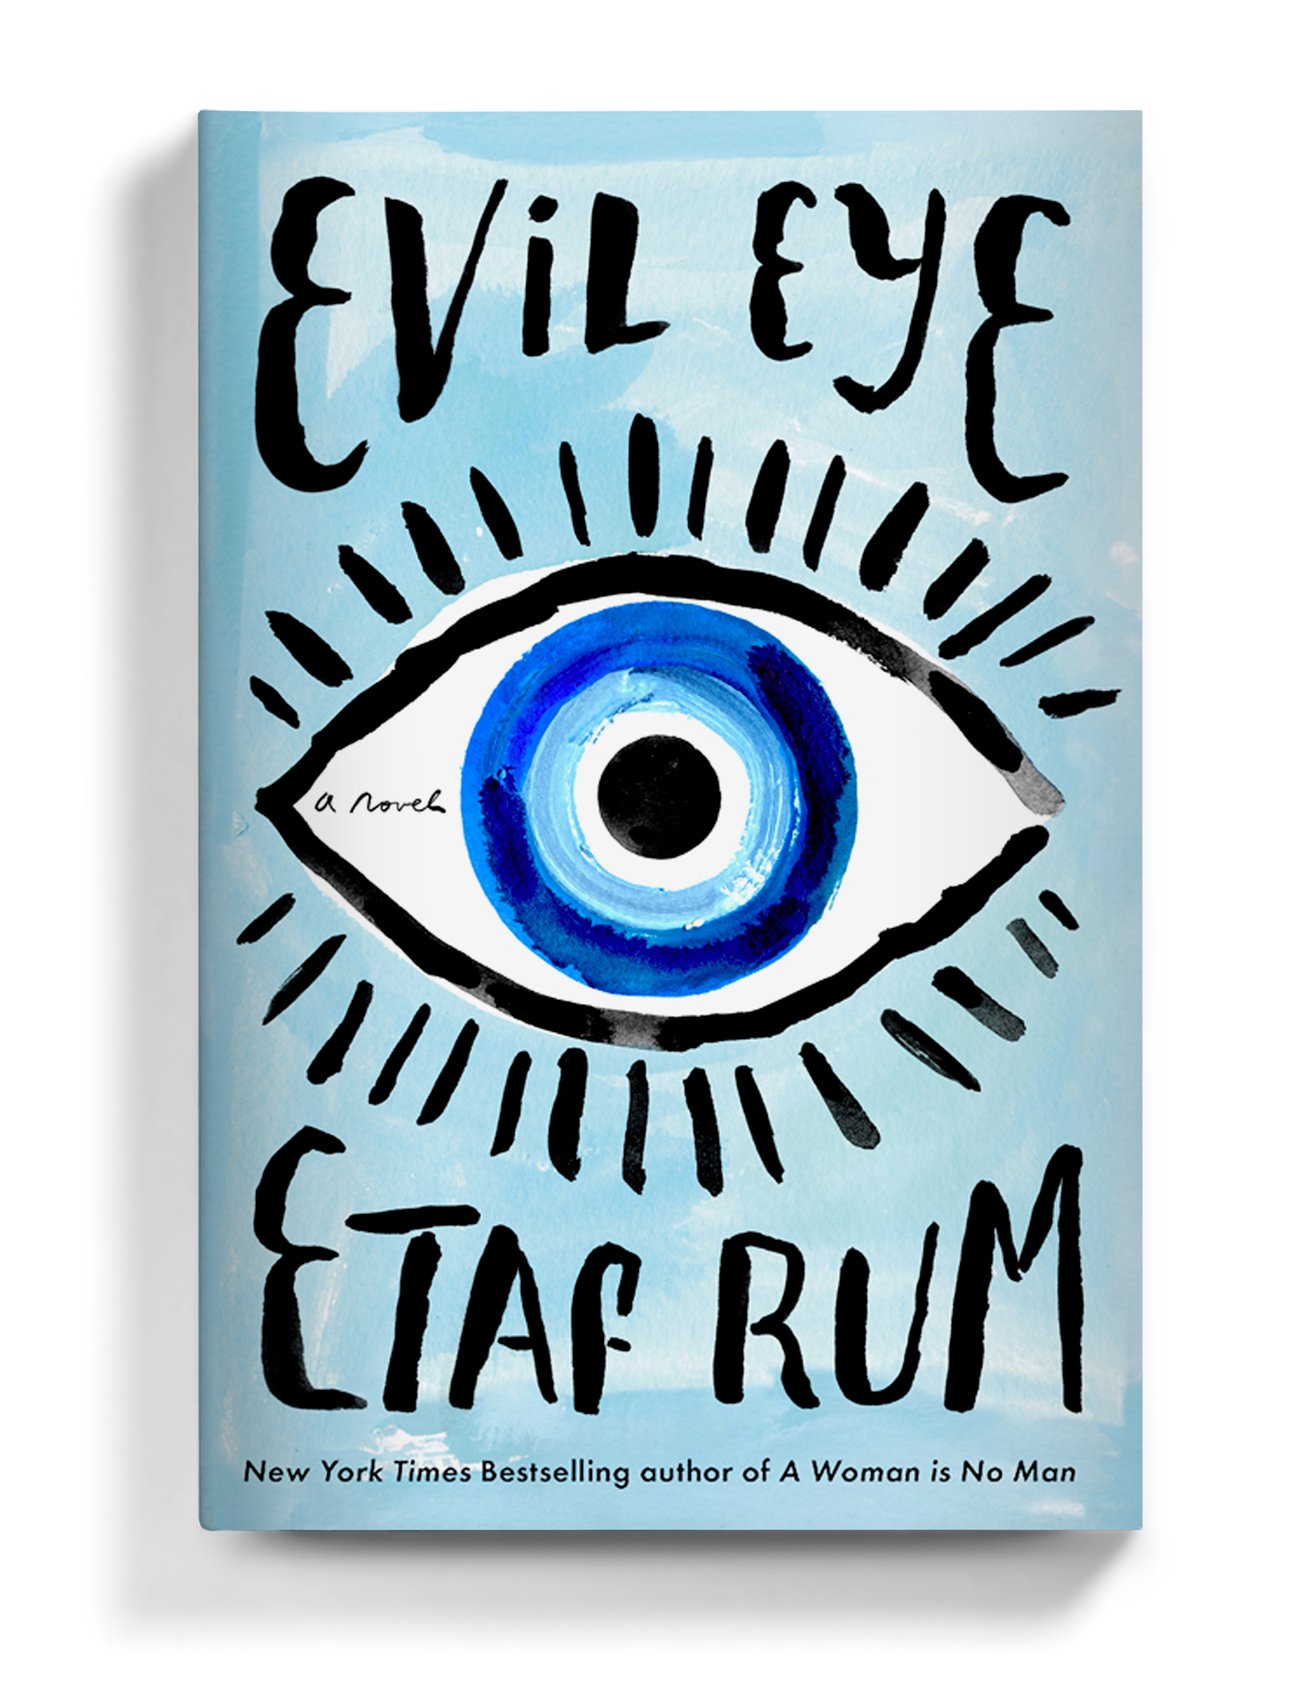 Art and Lettering for Evil Eye by Etaf Rum